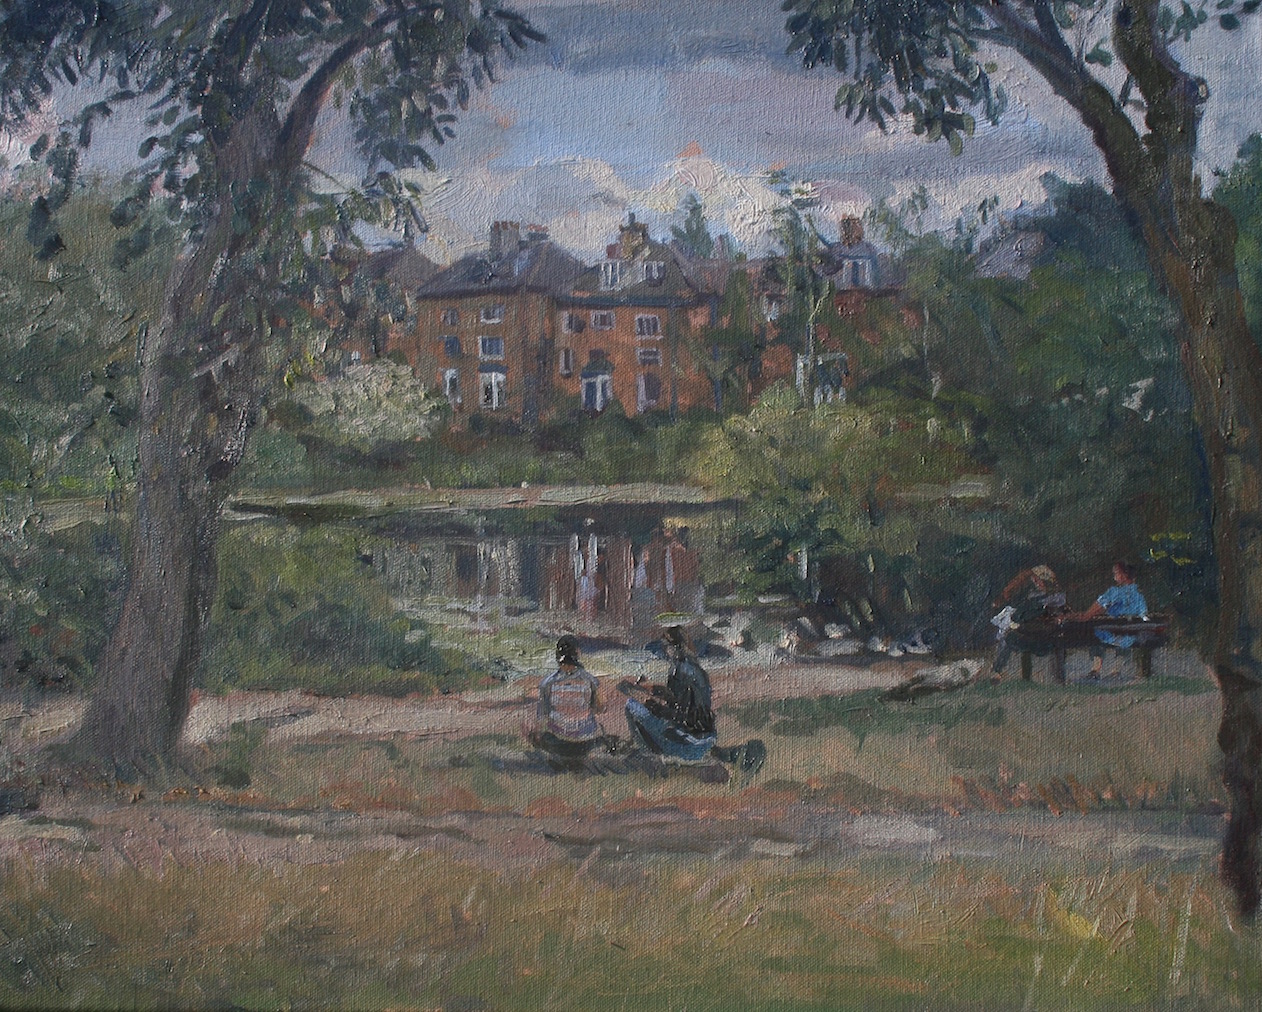 The Pond at Hampstead Heath